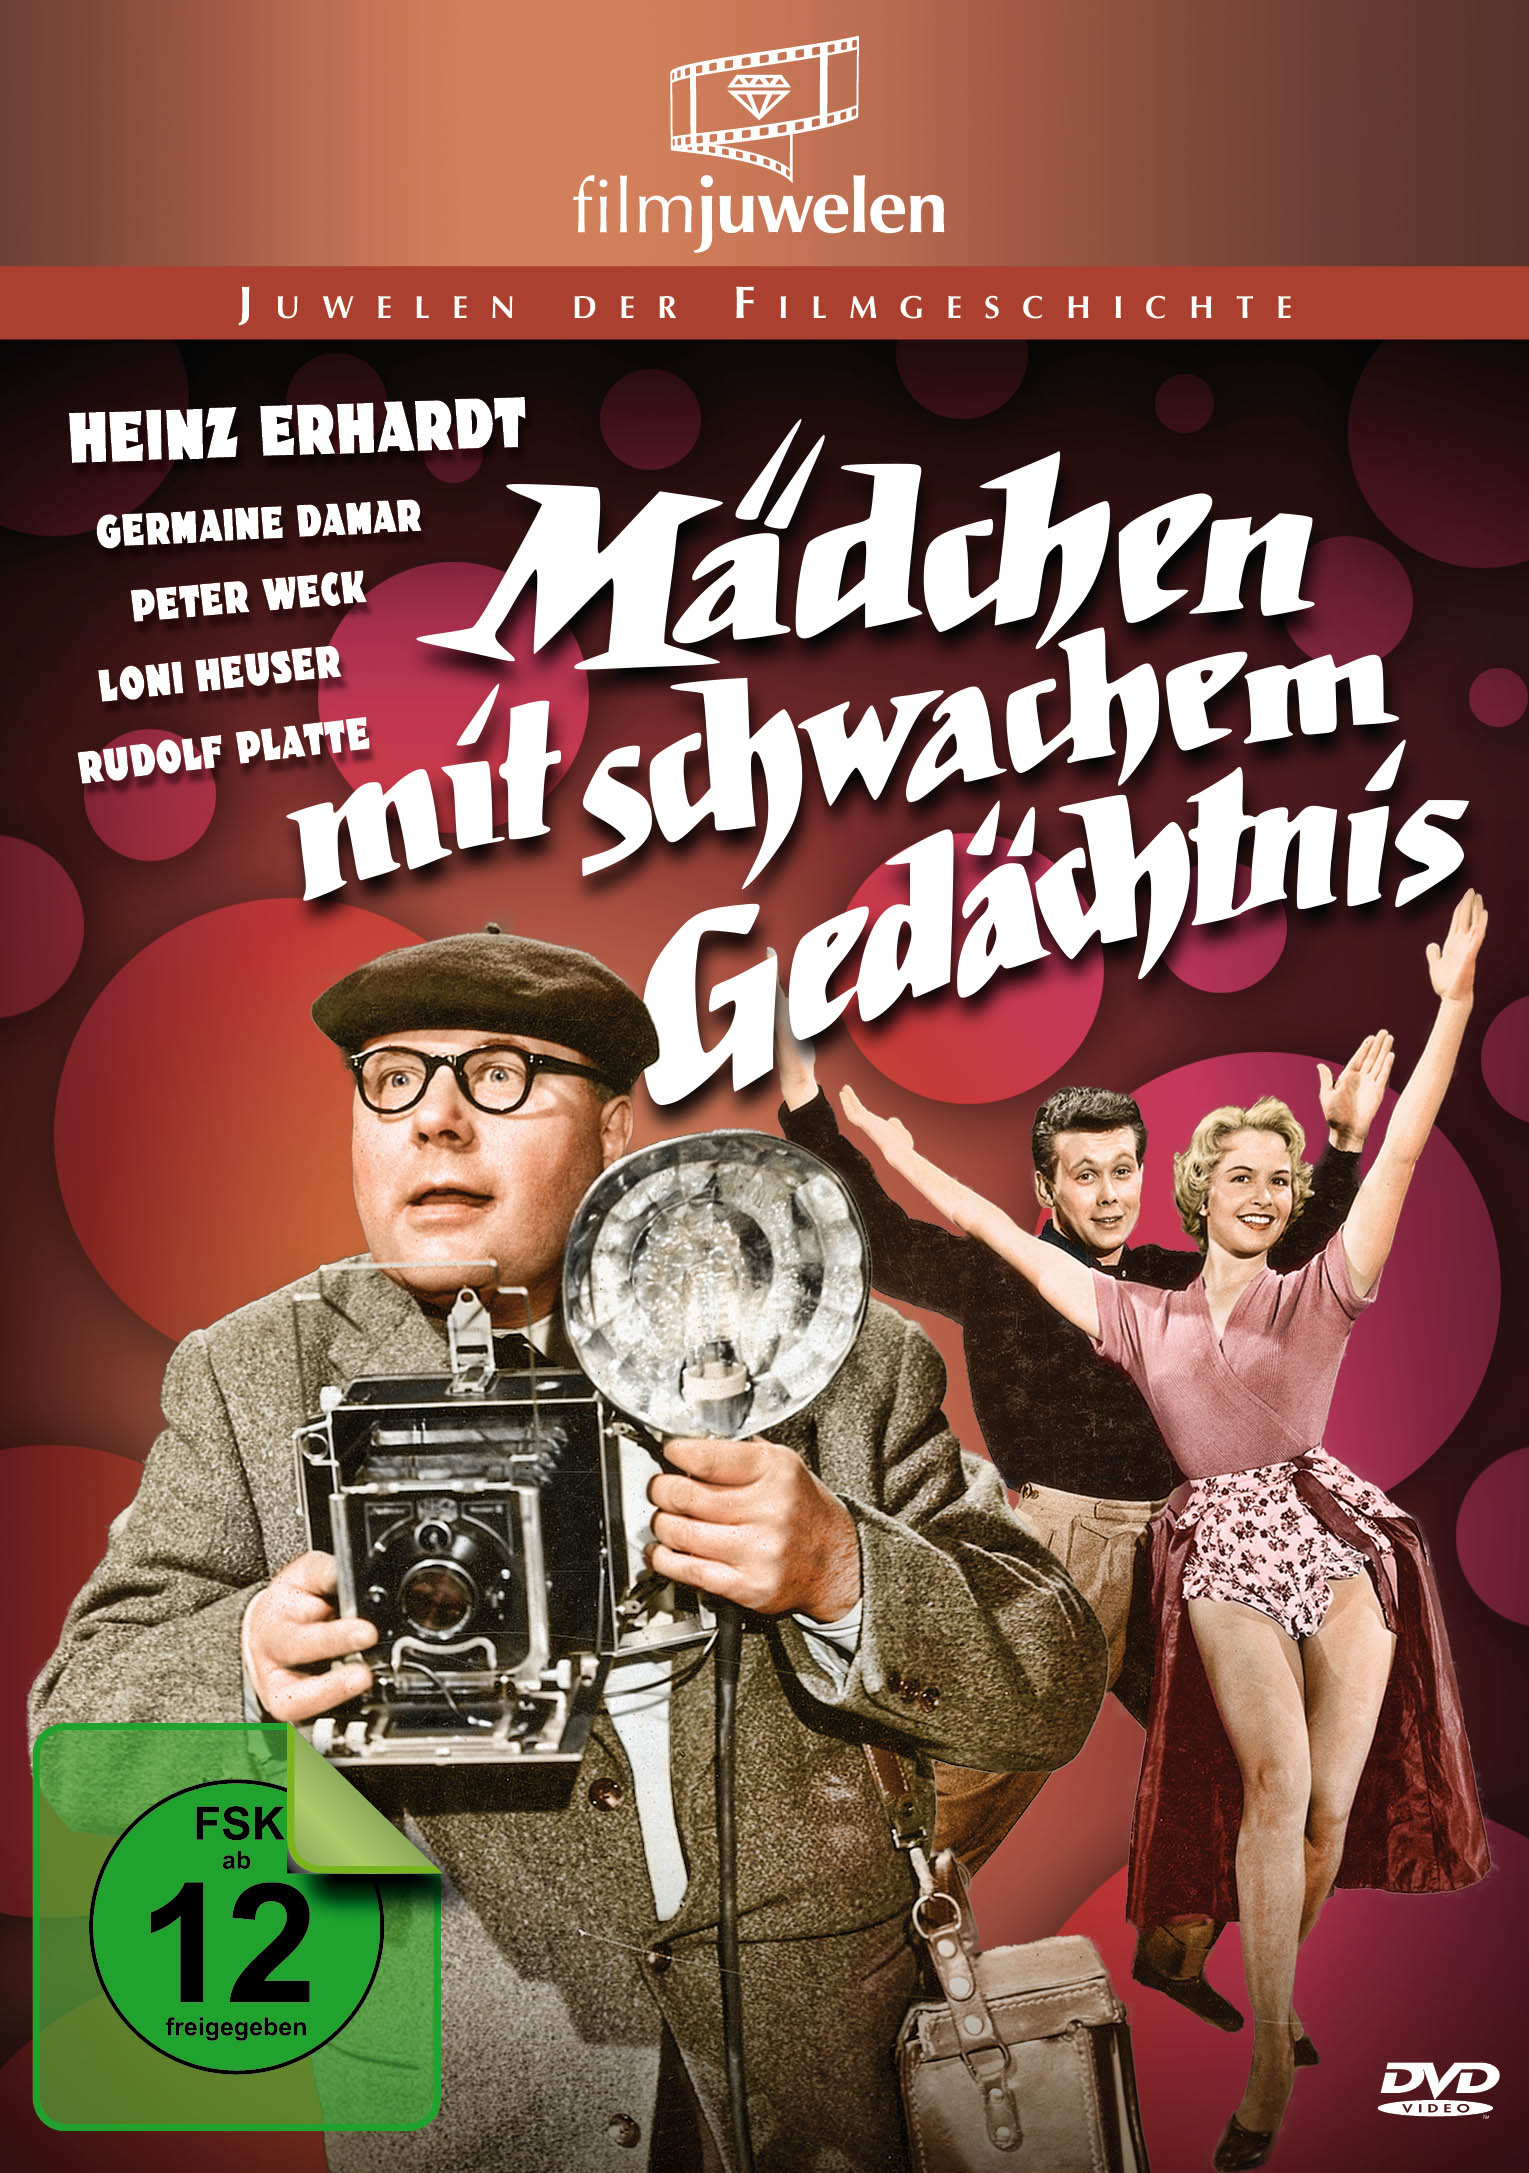 Heinz Erhardt - Mädchen Gedächtnis mit schwachem DVD